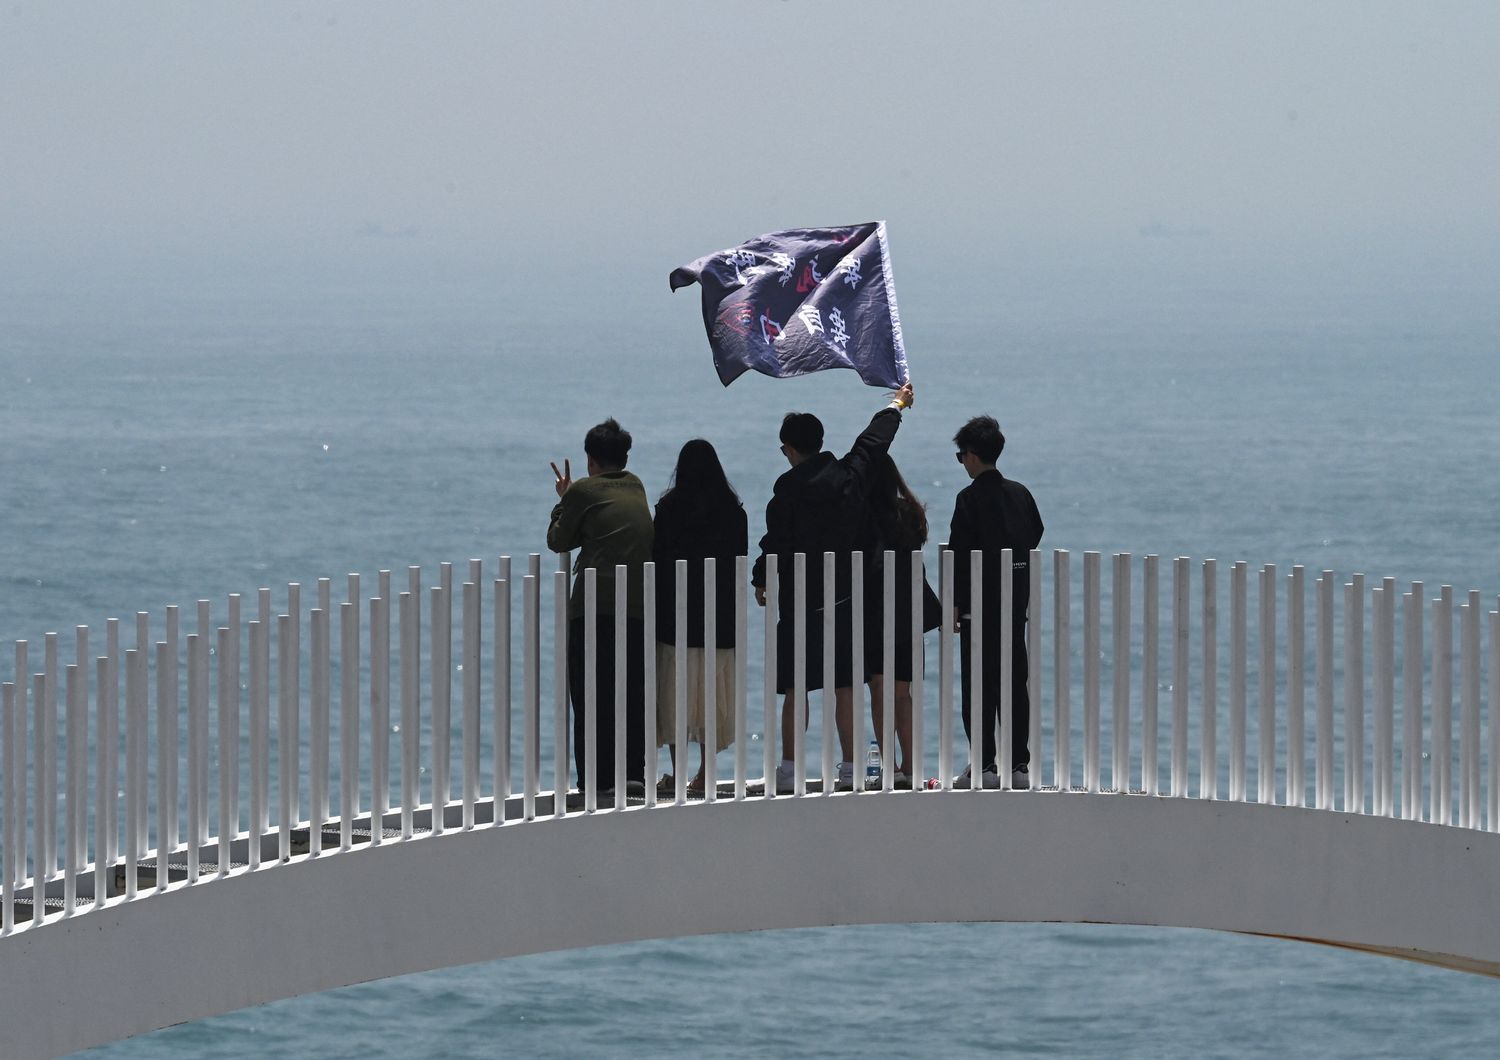 Turisti cinesi sventolano una bandiera su un ponte che si affaccia sullo stretto di Taiwan